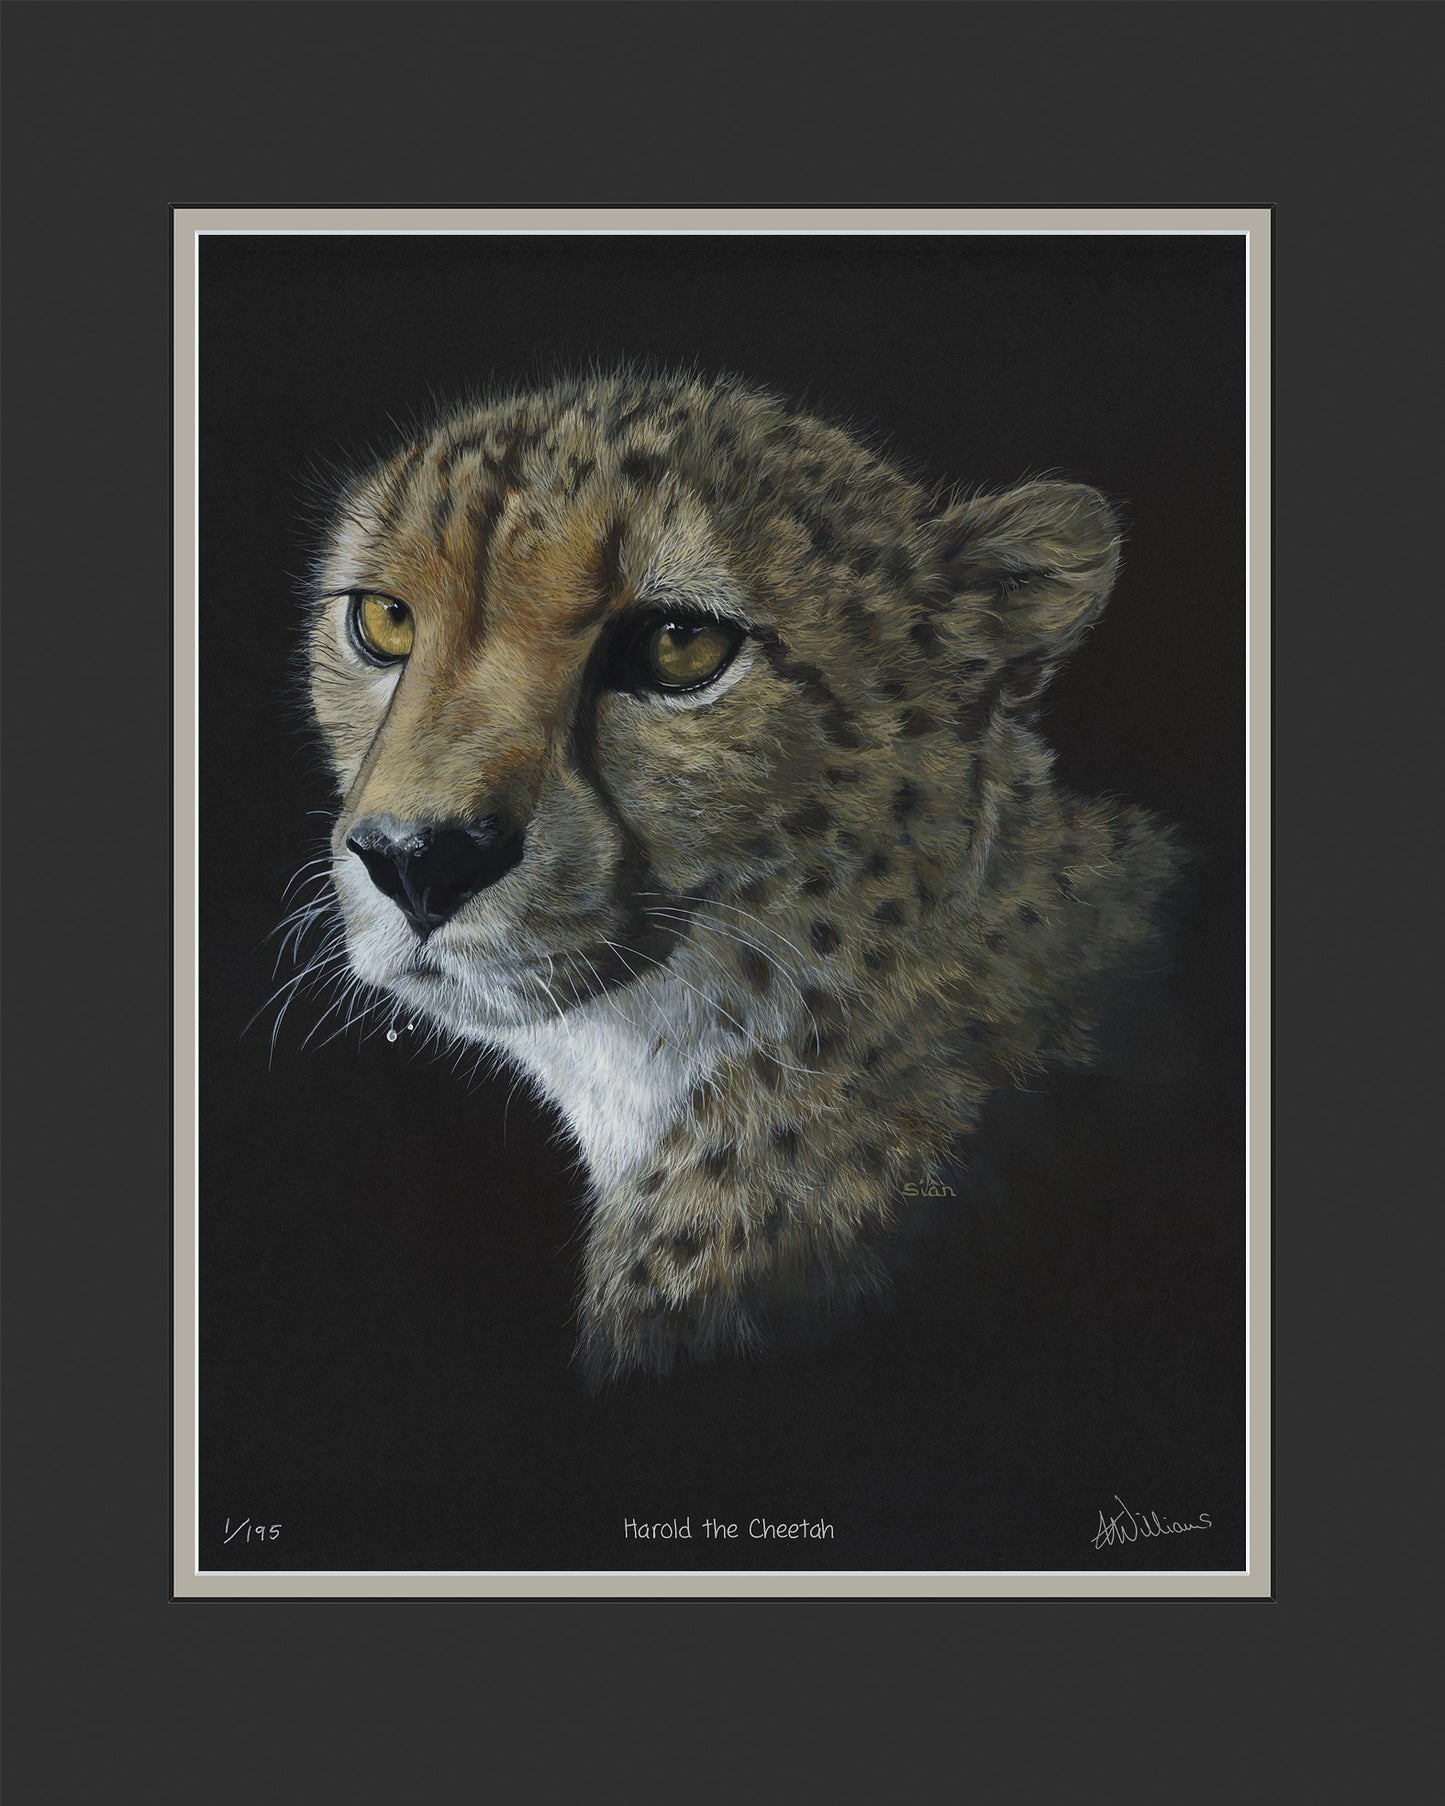 Harold the Cheetah - limited edition